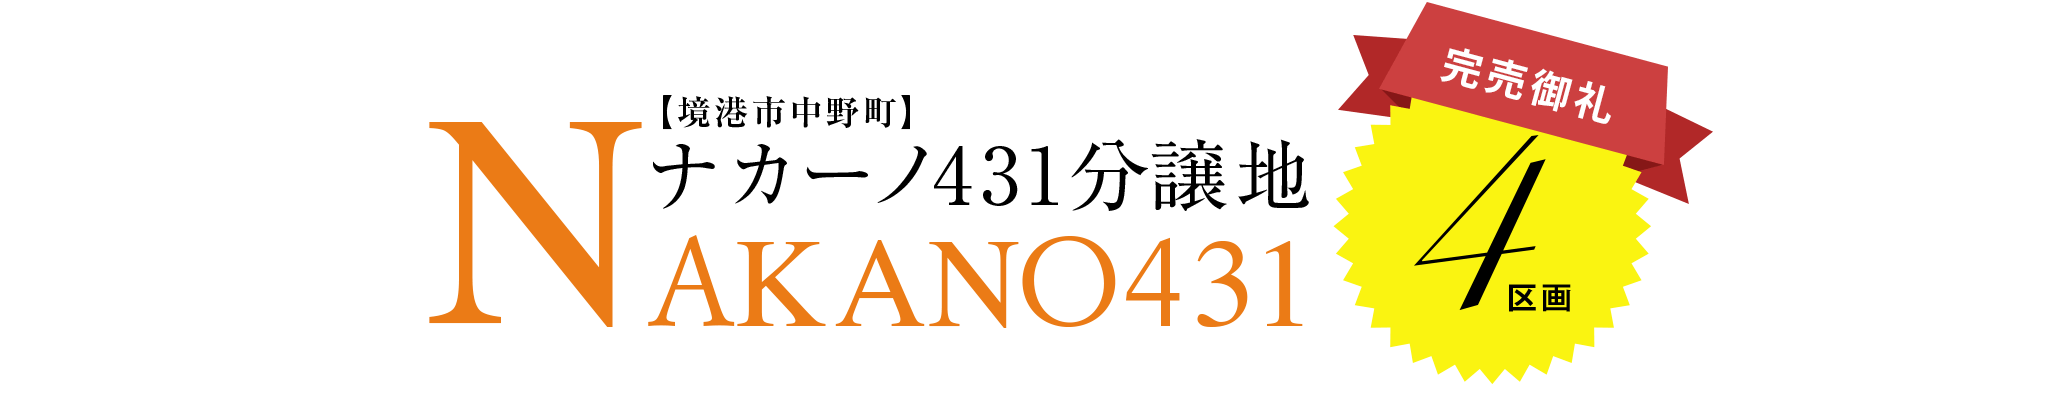 ナカーノ431